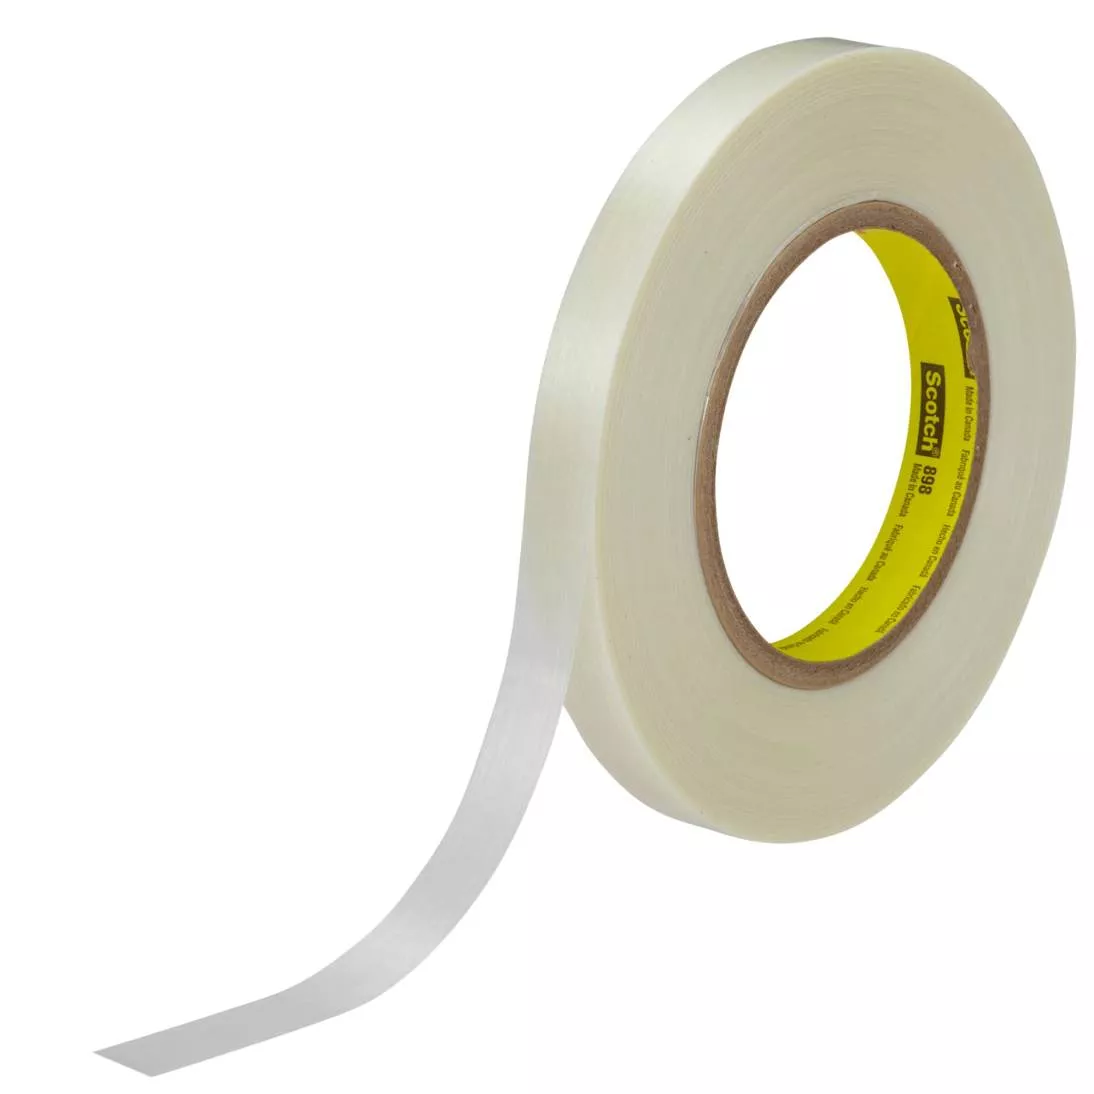 Scotch® Filament Tape 898, Clear, 12 mm x 330 m, 6.6 mil, 12 rolls per
case